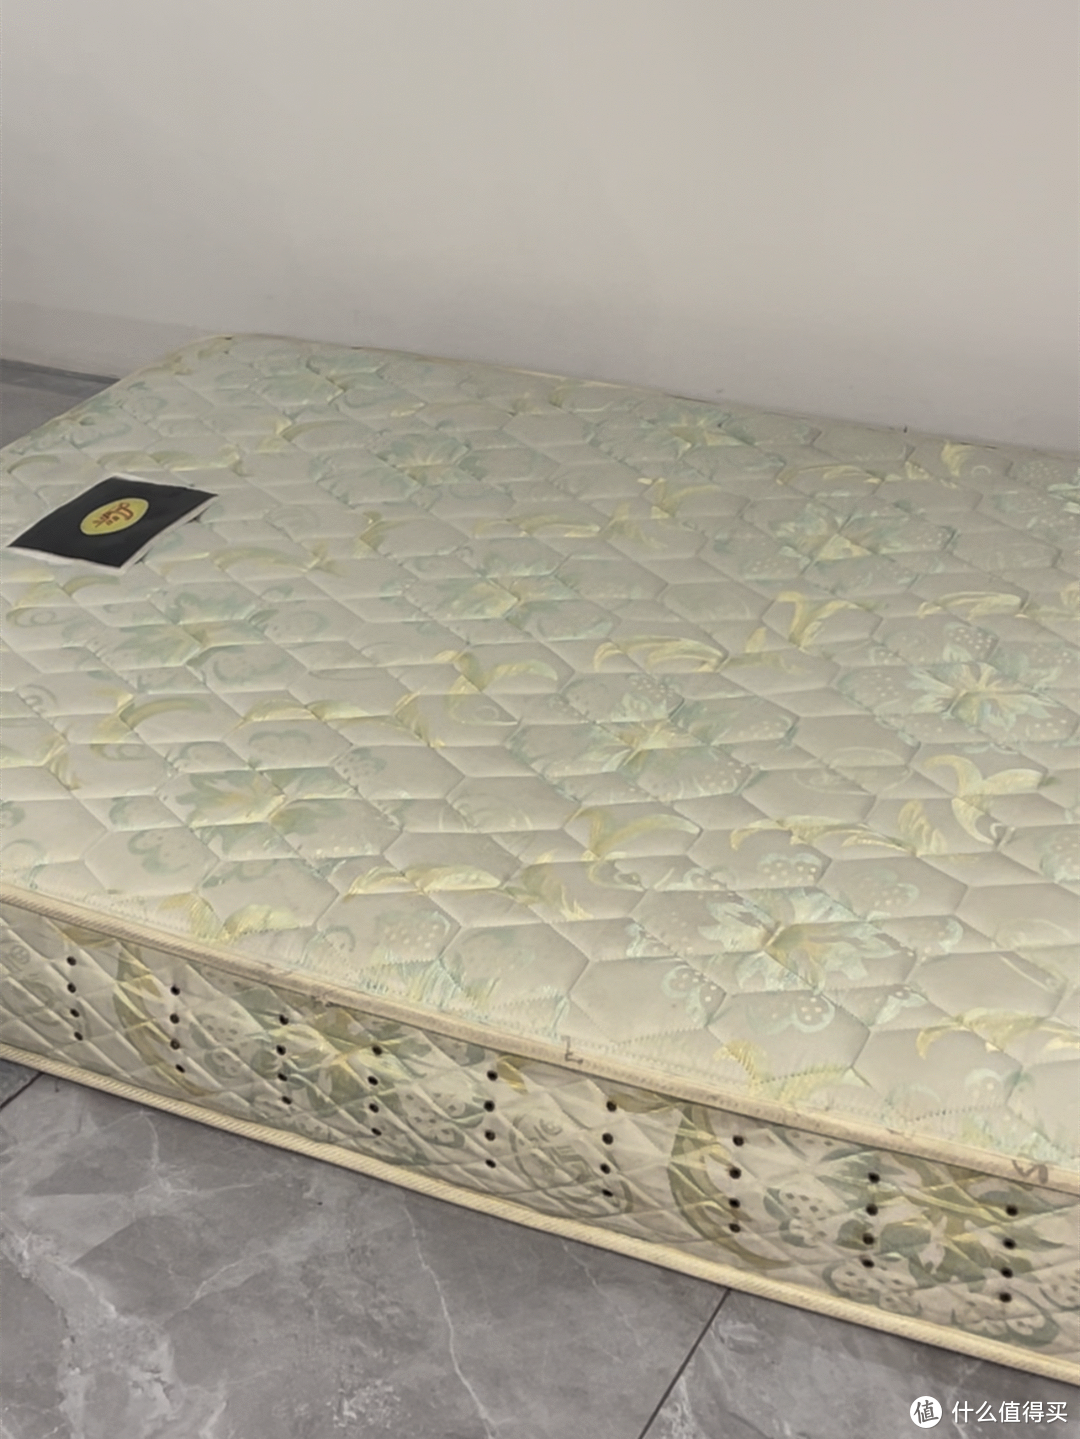 【床垫改造】上海老牌床垫竟成“人体吸尘器”？